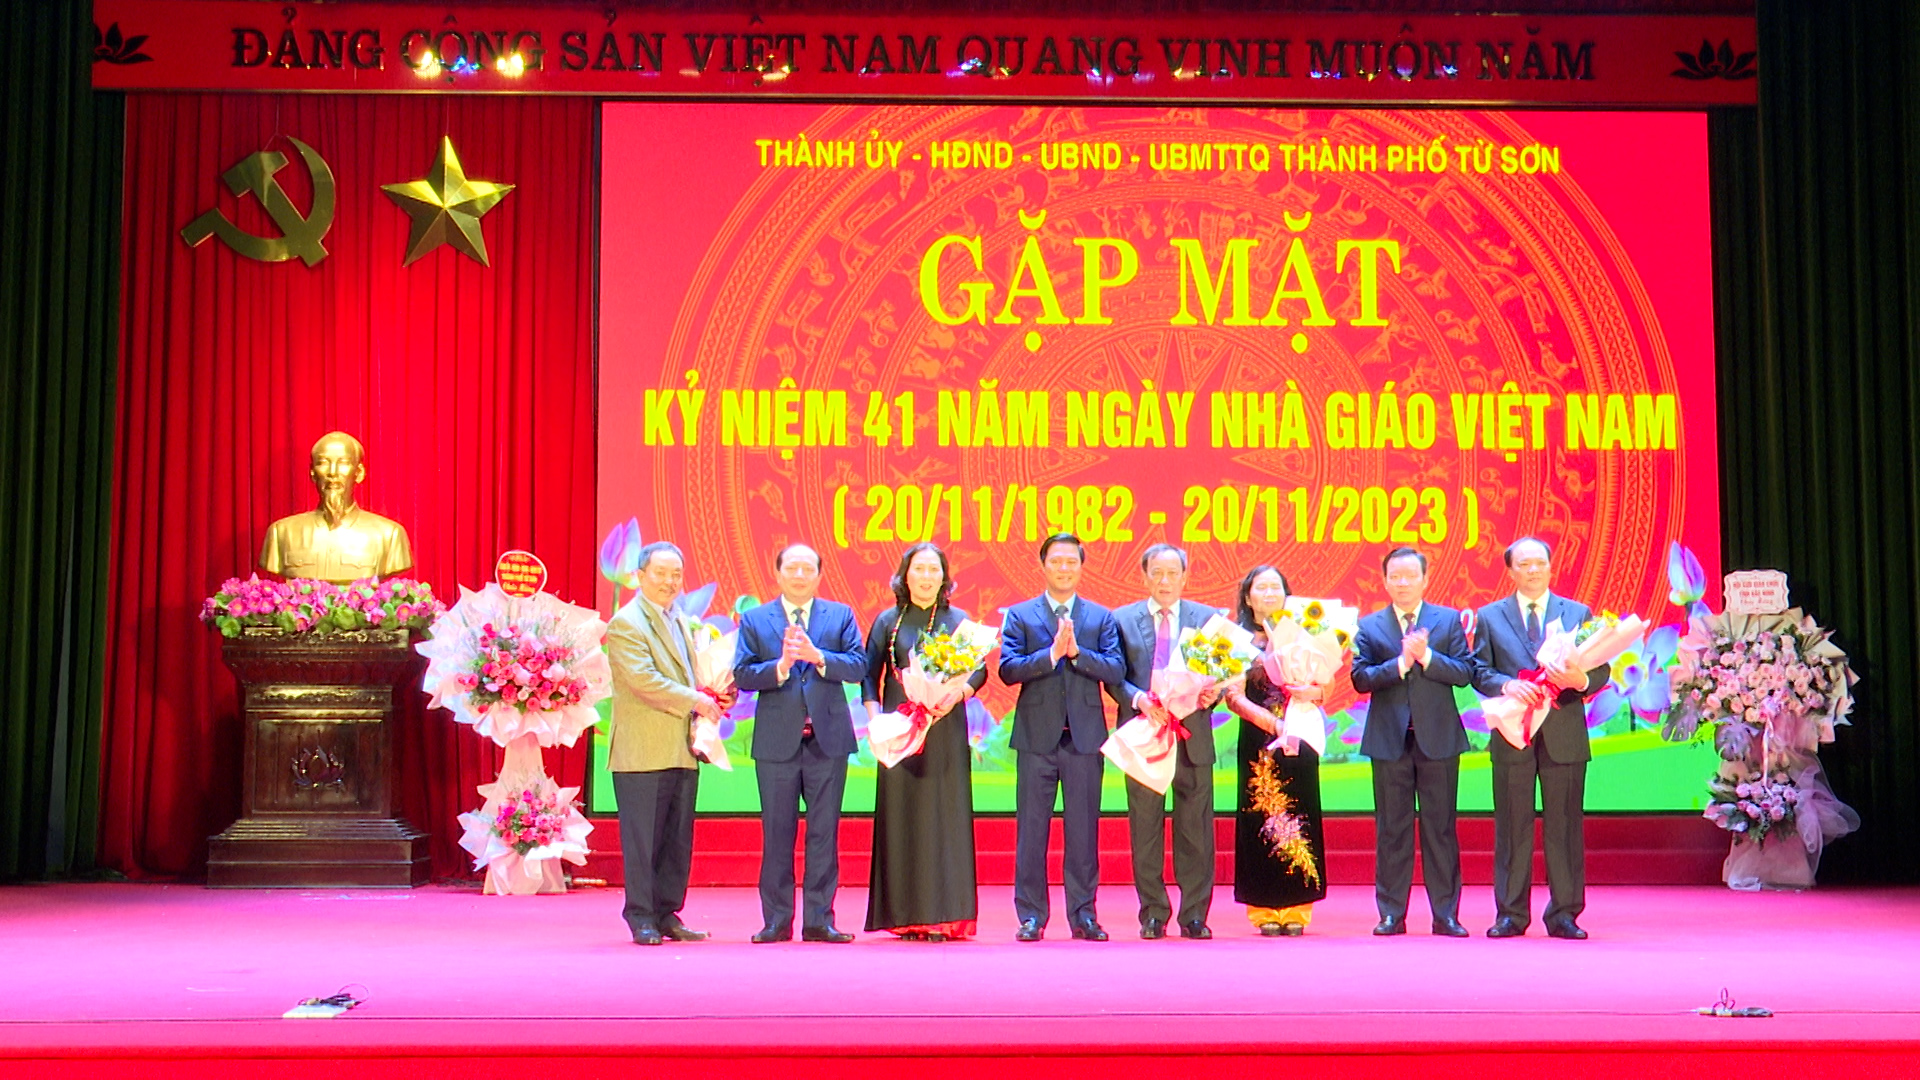 Từ Sơn tổ chức hội nghị gặp mặt kỷ niệm 41 năm ngày nhà giáo Việt Nam